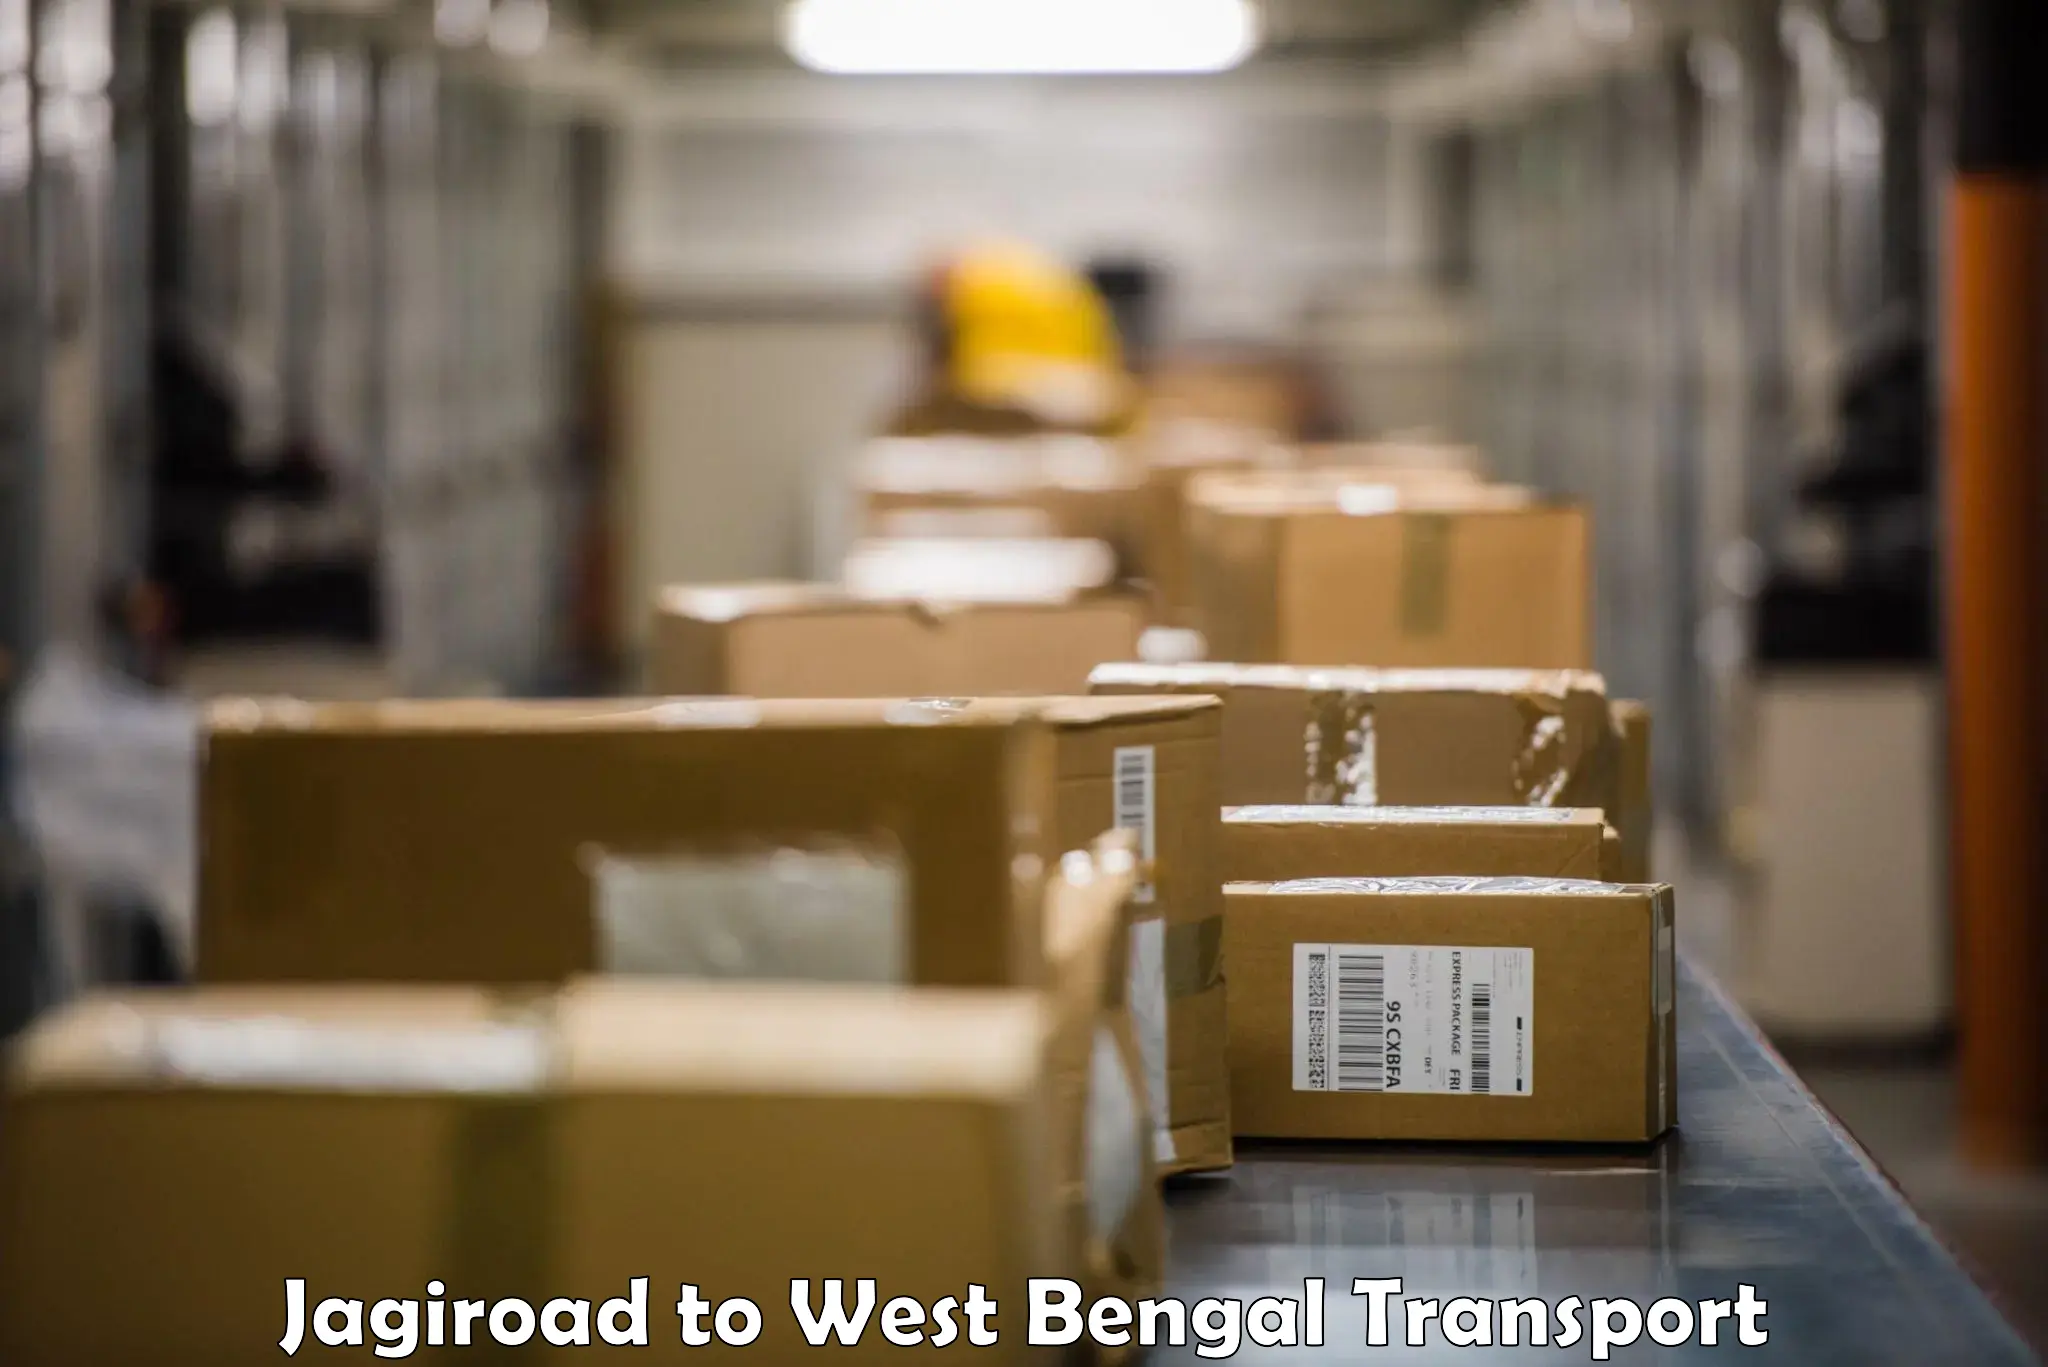 Furniture transport service Jagiroad to Asansol